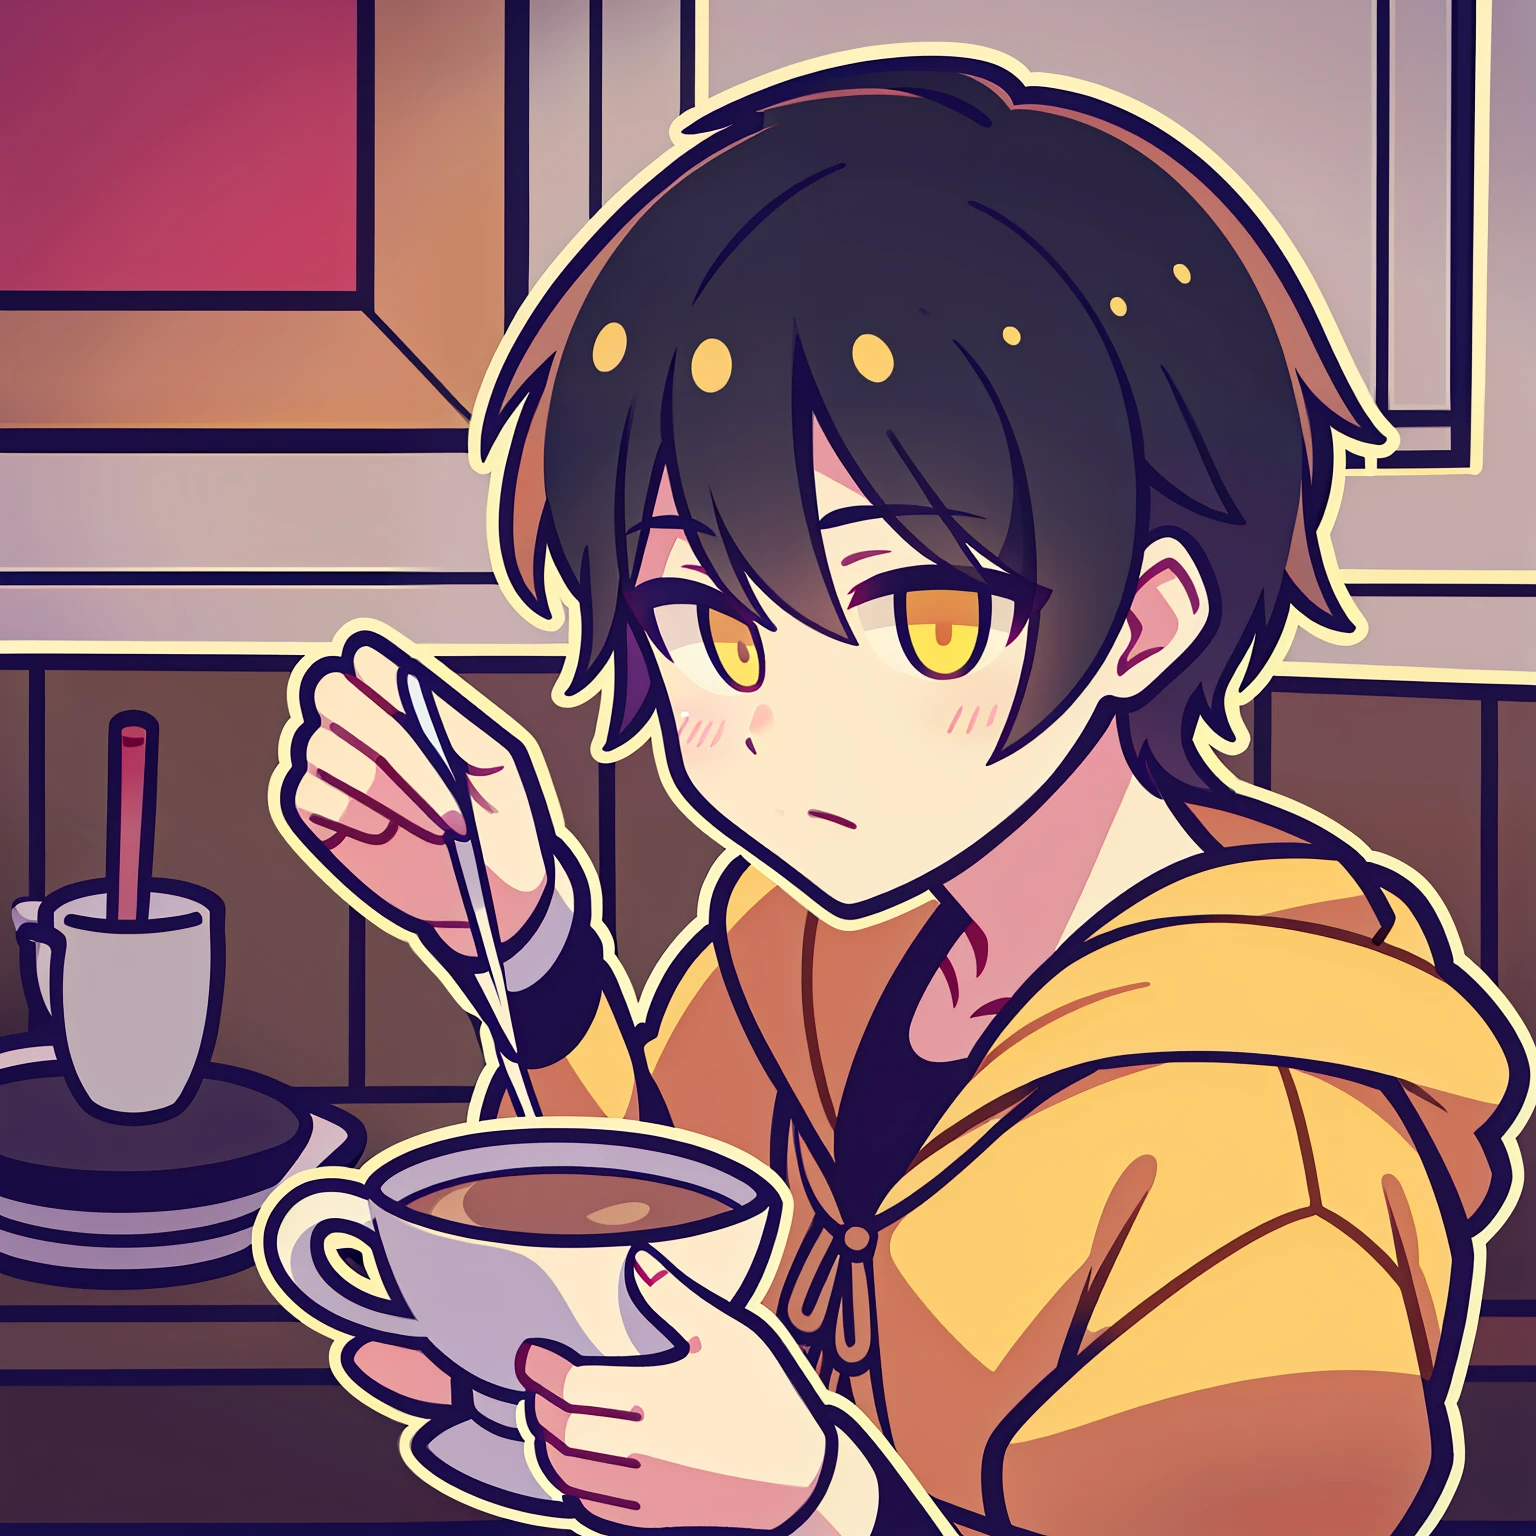 صبي ذو شعر أسود قصير وبؤبؤ عين أصفر يشرب الشاي تعبيرًا غير رسمي بأسلوب طباعة Q